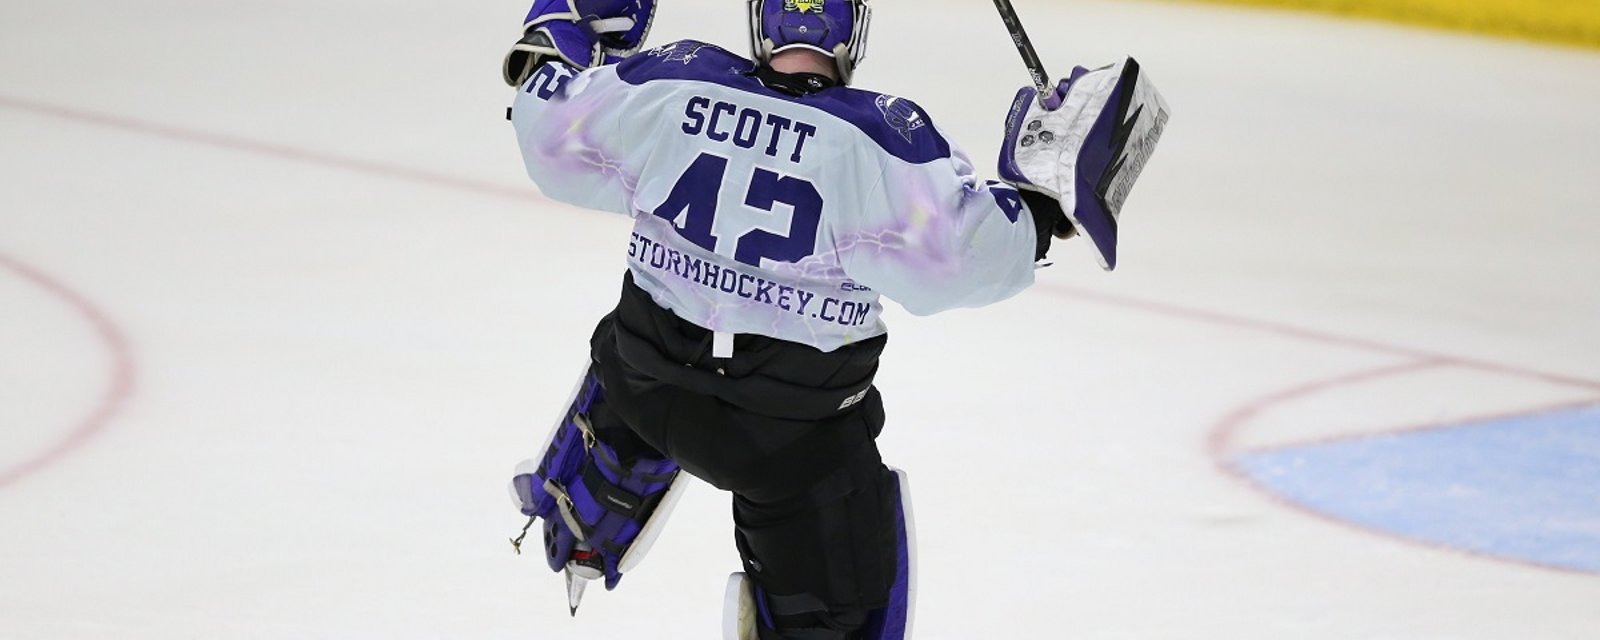 Goaltender Todd Scott scores an ultra rare goalie-goal.